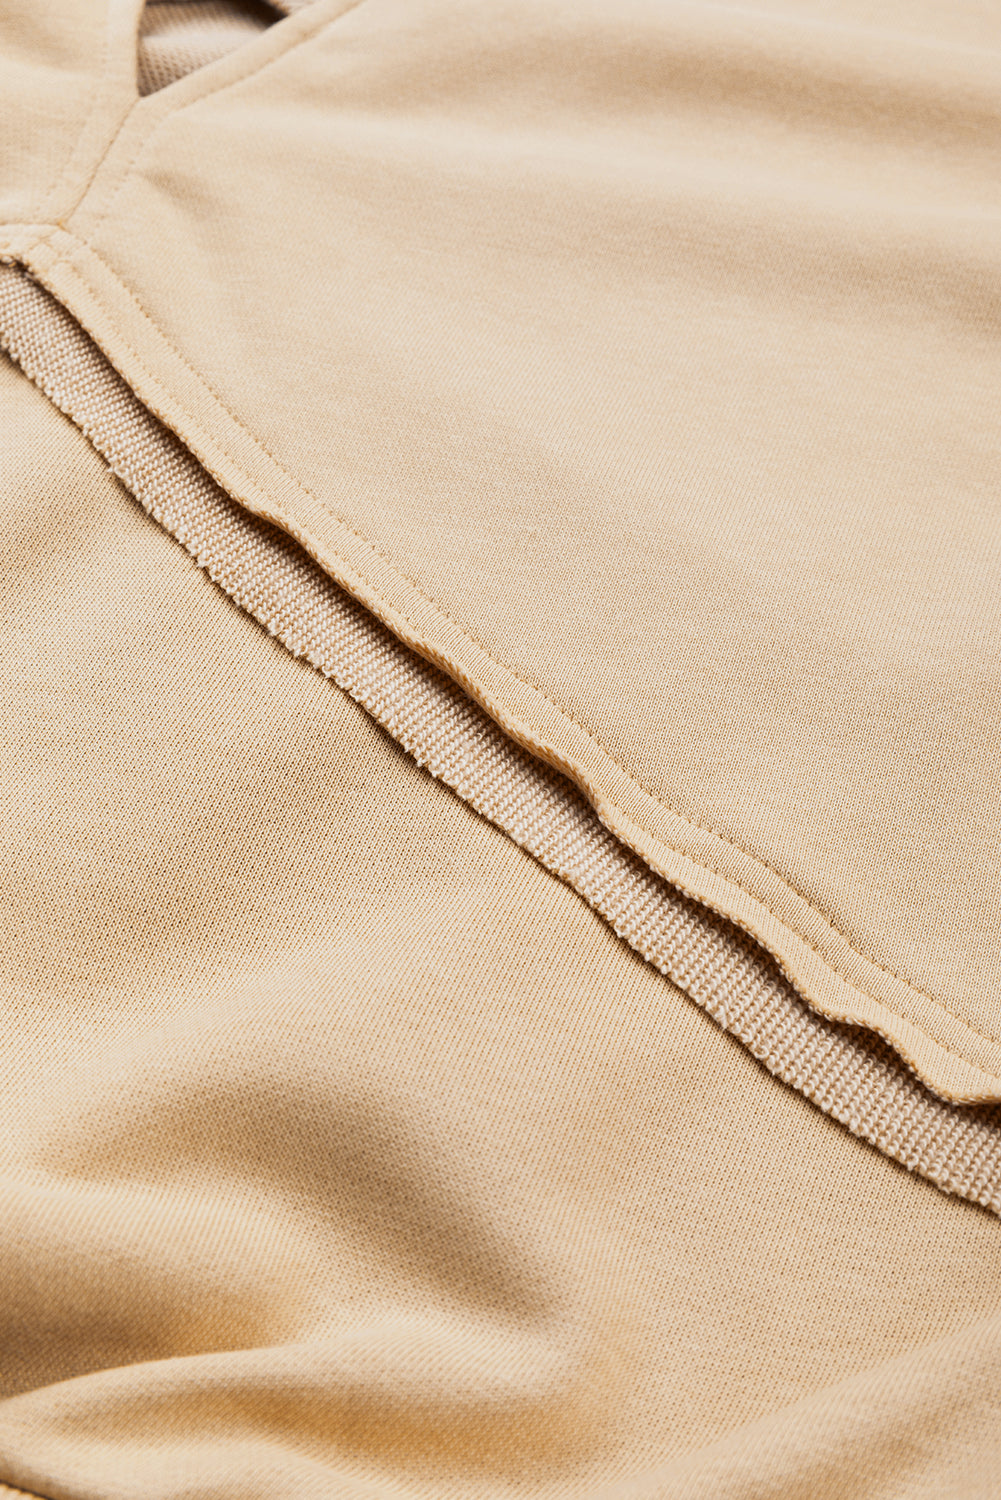 Helles, französisch-beigefarbenes, einfarbiges Sweatshirt mit ausgehöhltem Rücken und Gittermuster